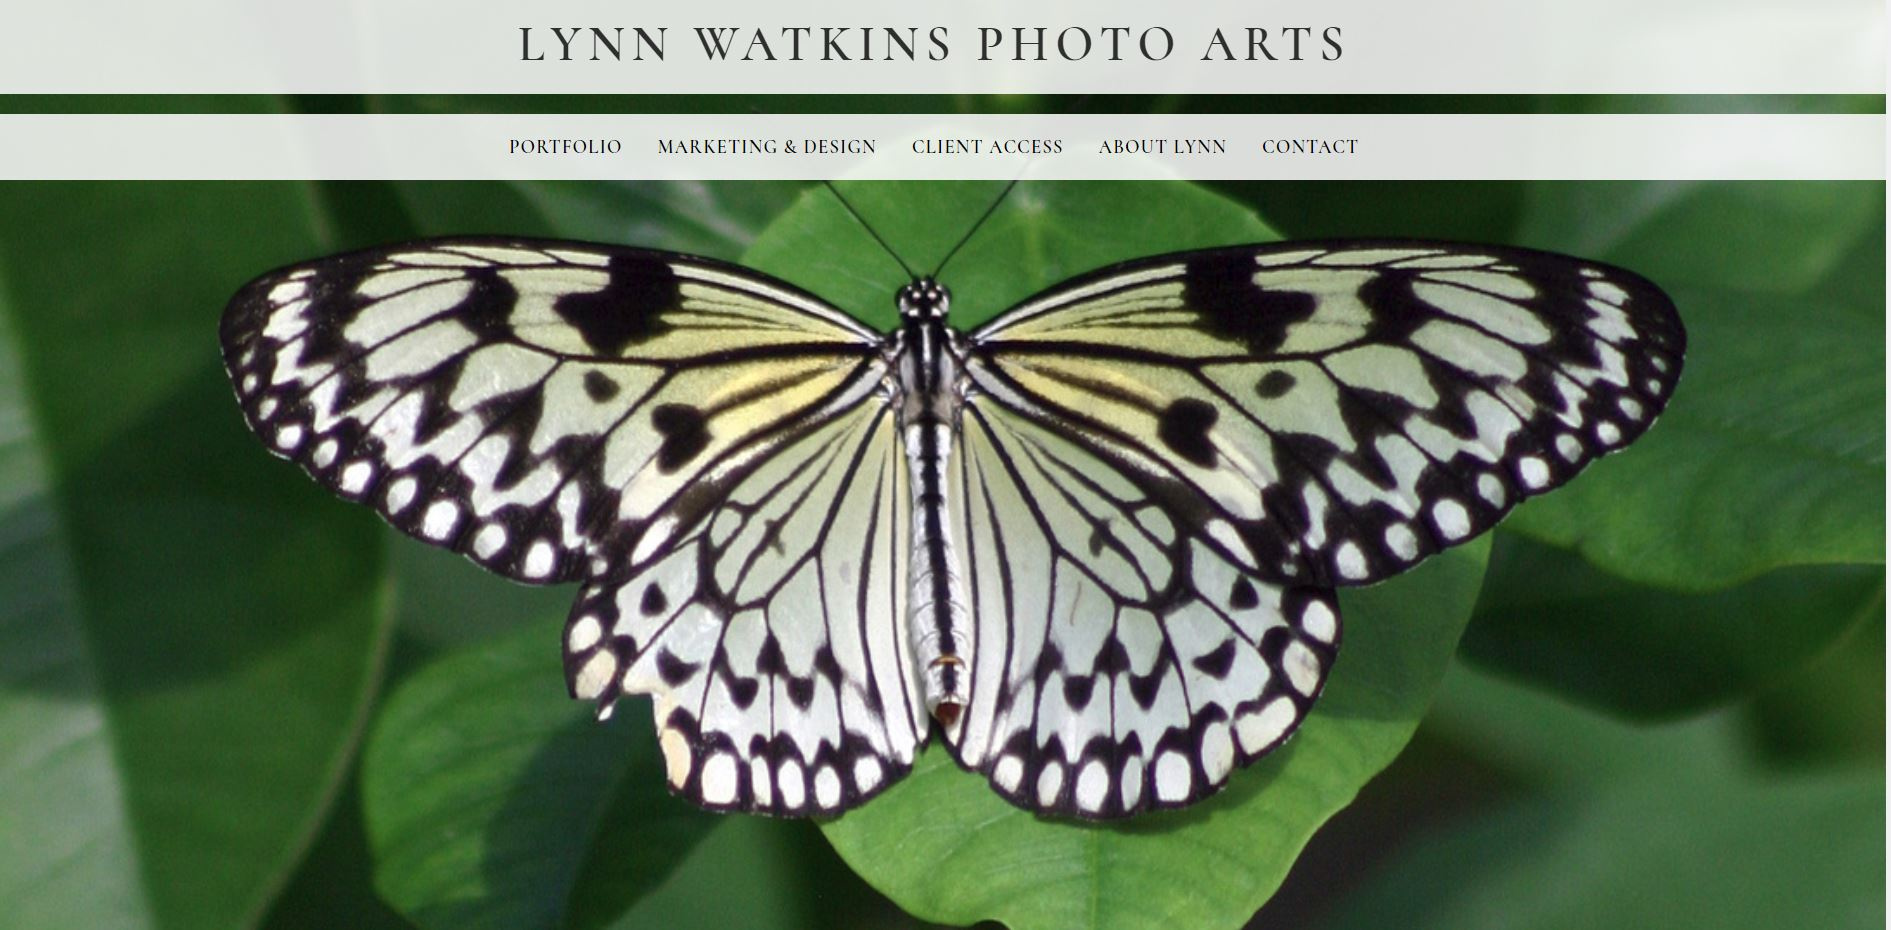 Lynn Watkins Photo Arts